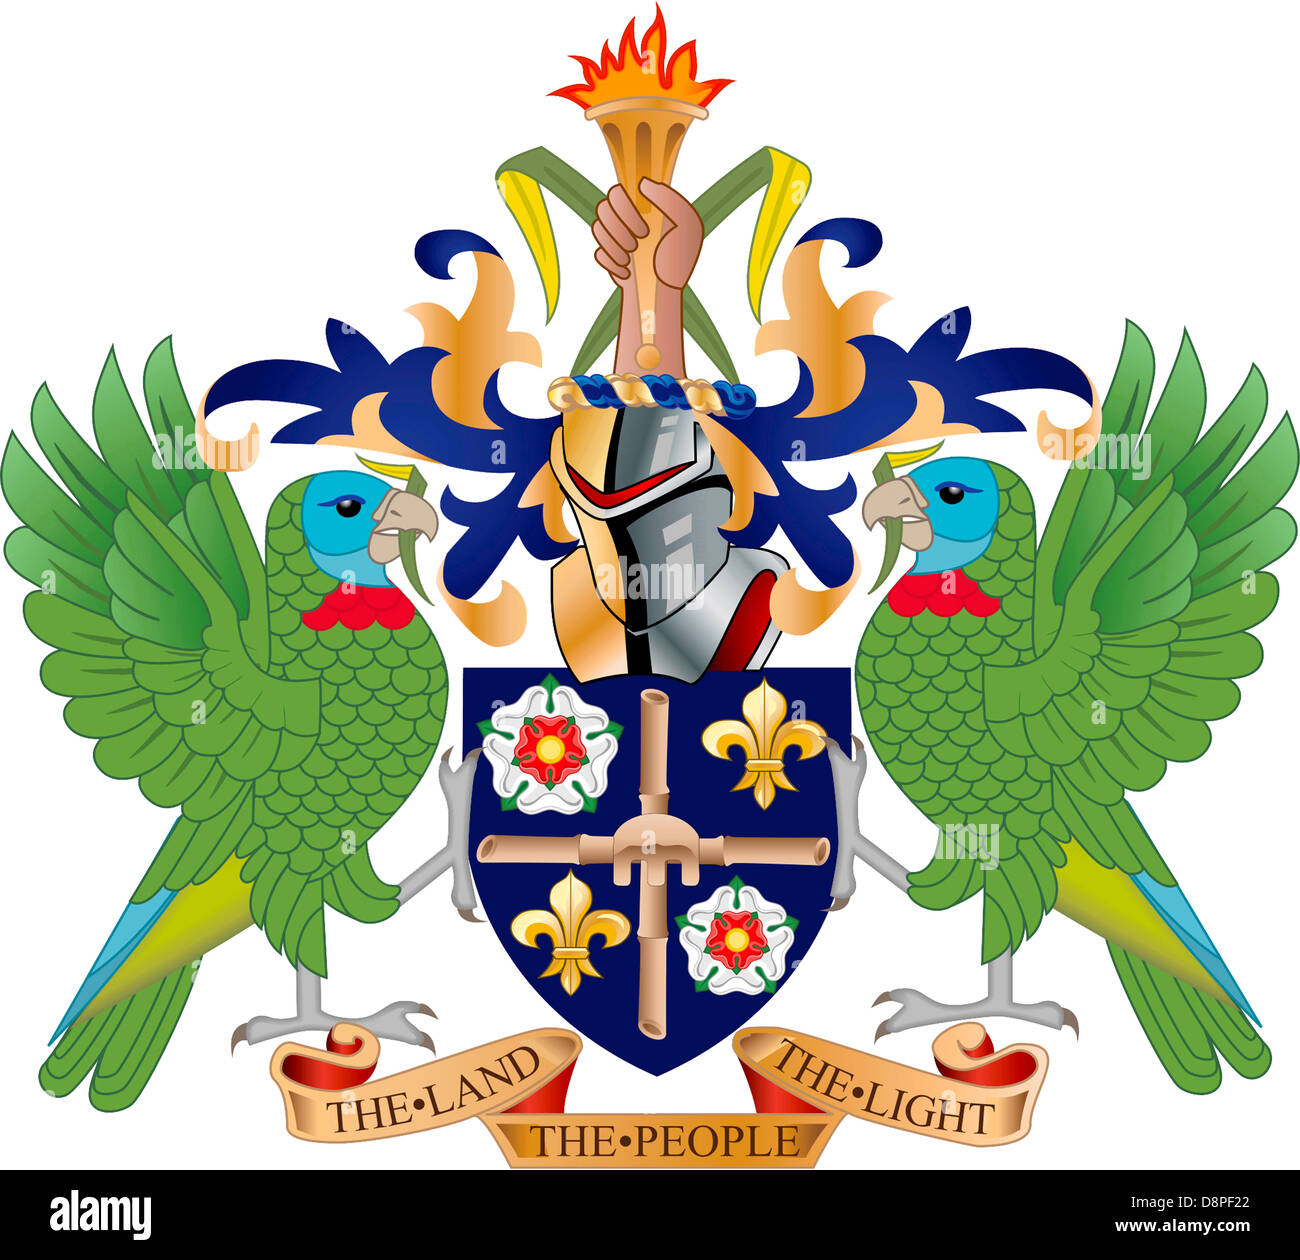 Armoiries de l'État insulaire des Caraïbes Sainte-Lucie. Banque D'Images